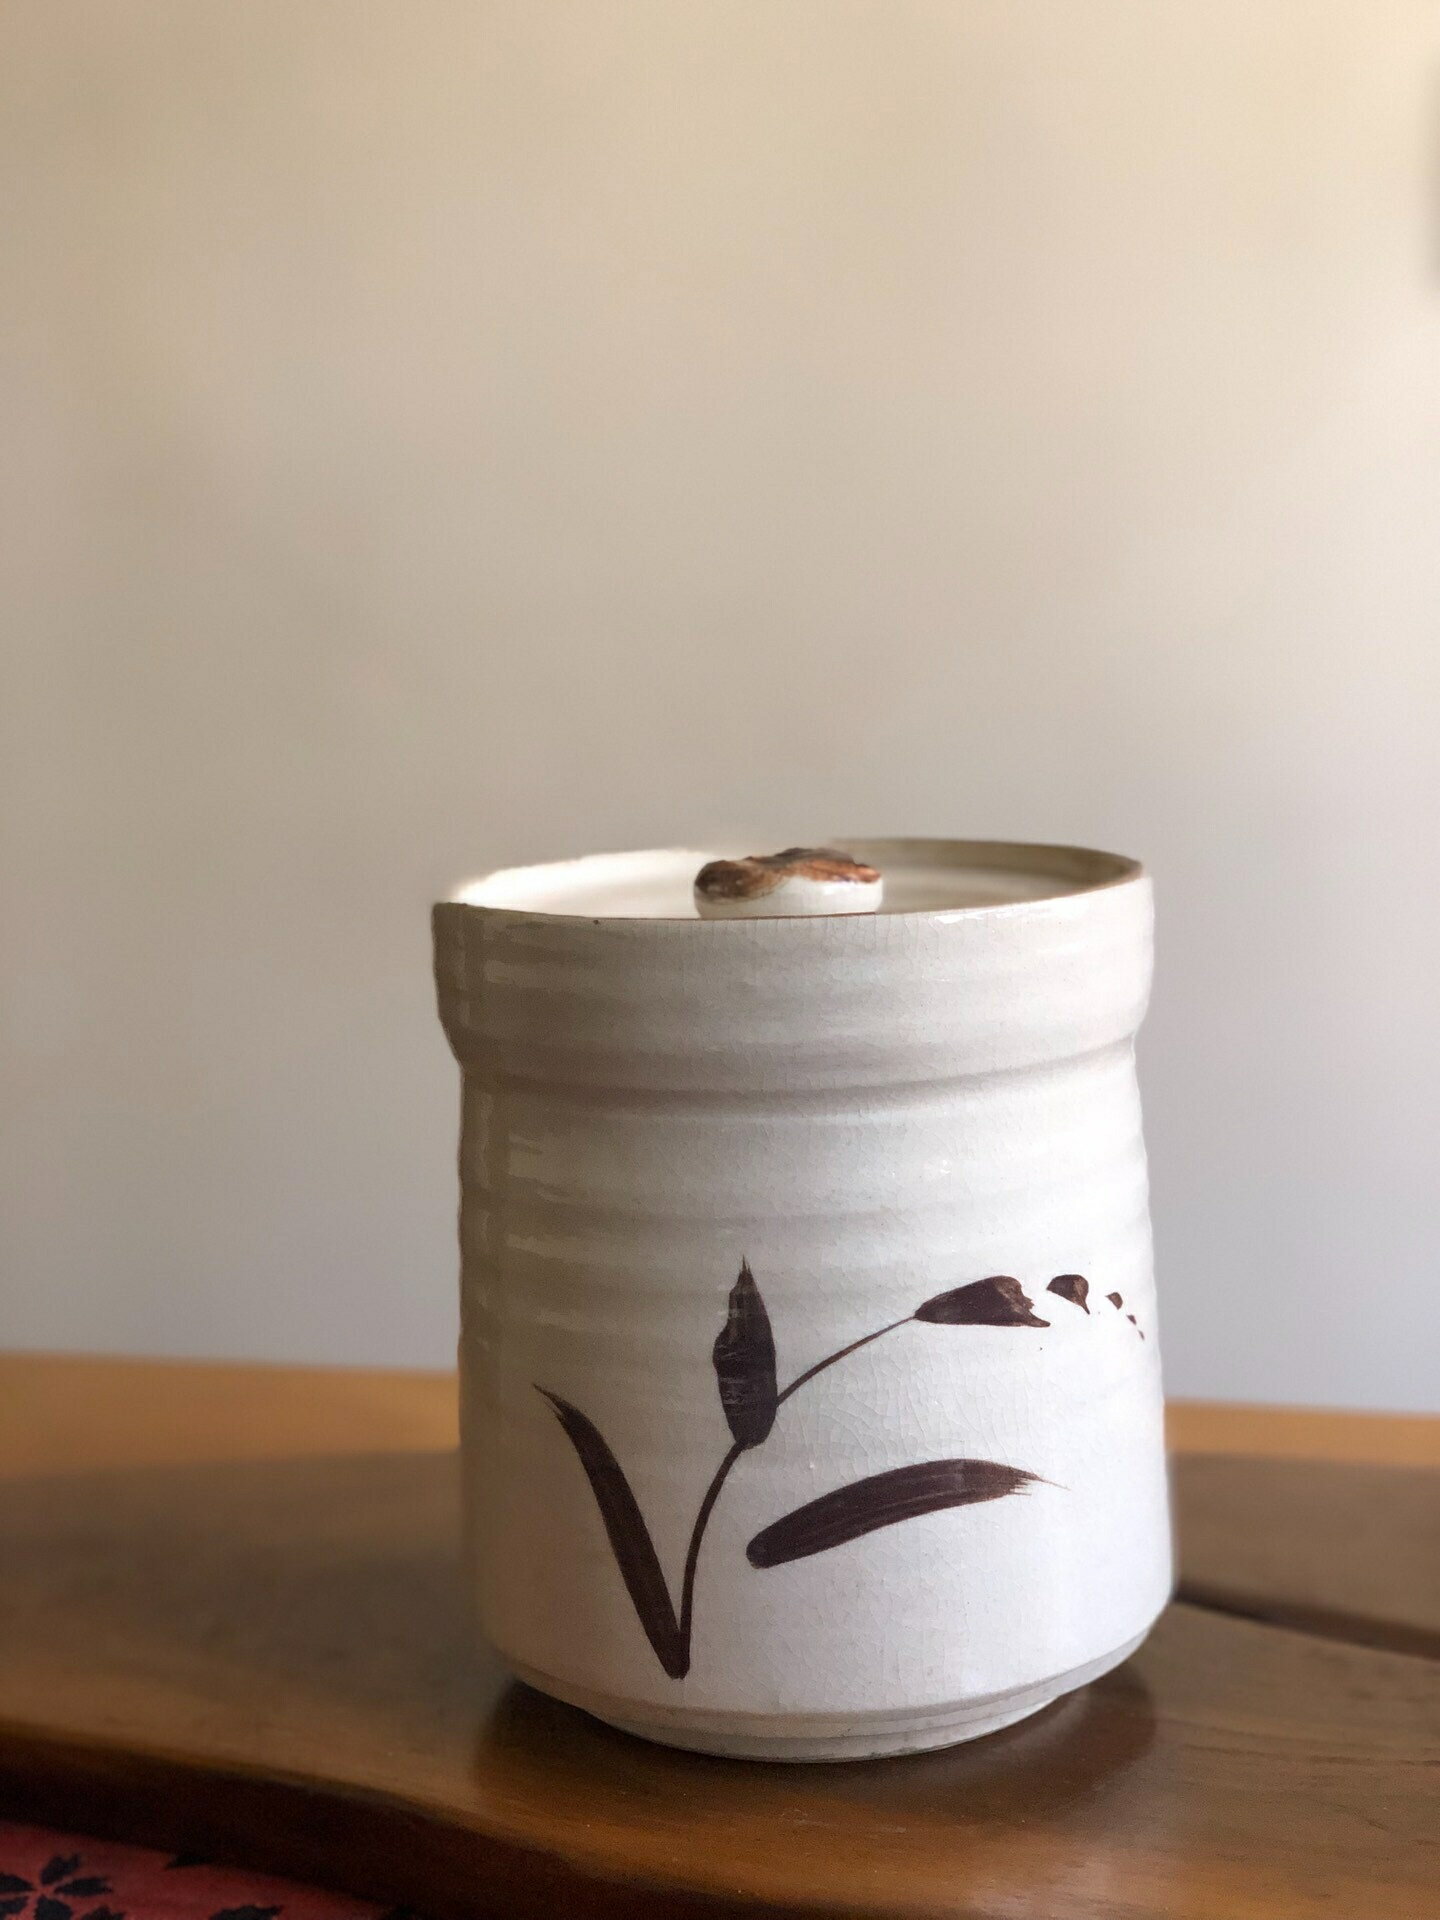 日本中古回流手繪唐津燒 禪意雅致簡約風 水指儲水罐 茶葉罐